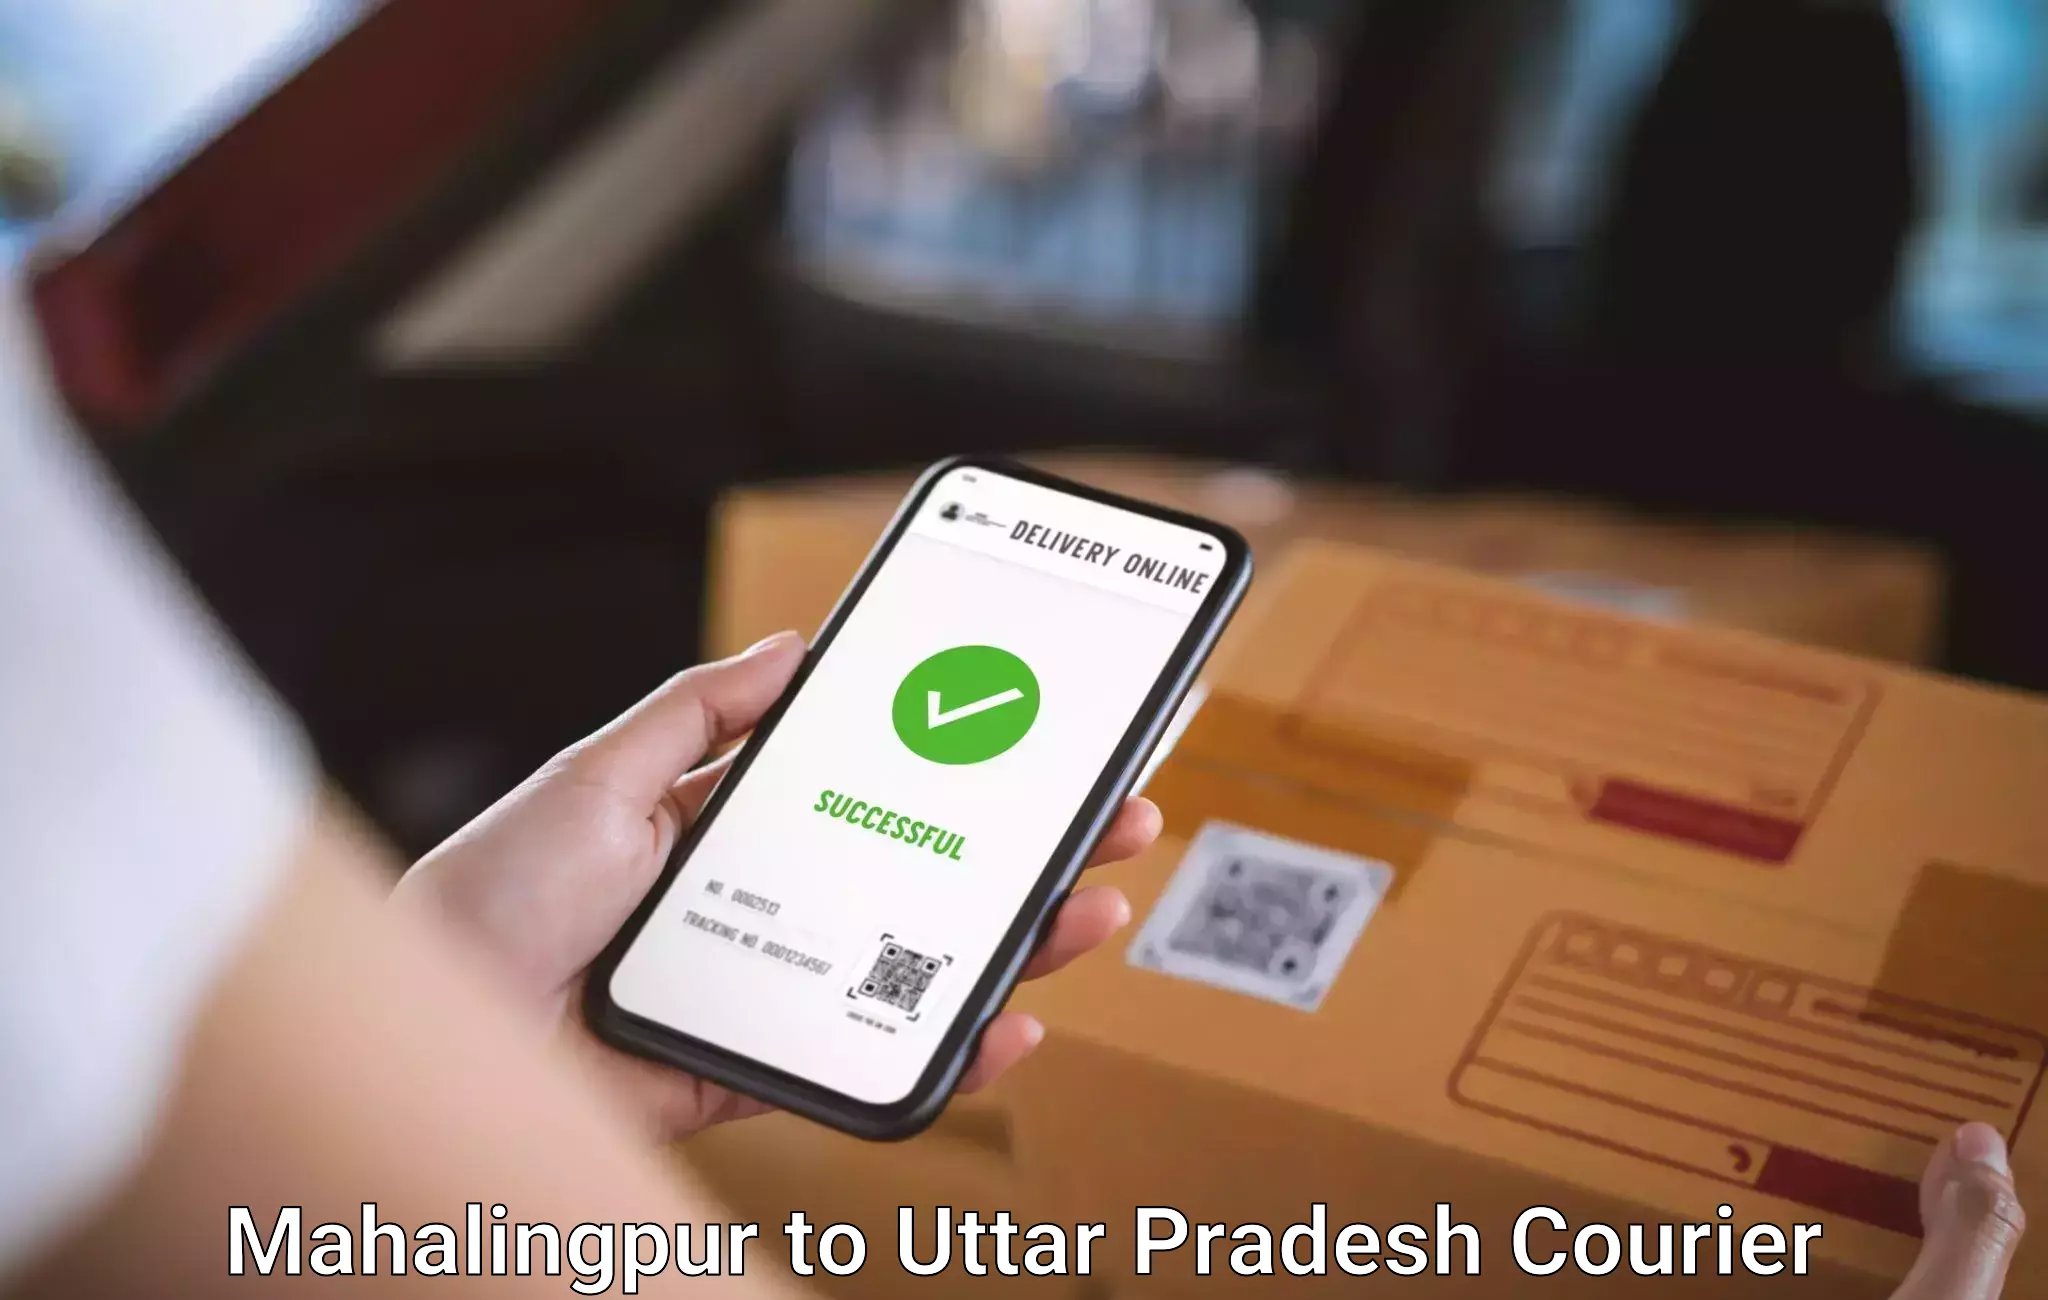 Baggage shipping advice Mahalingpur to Bakewar